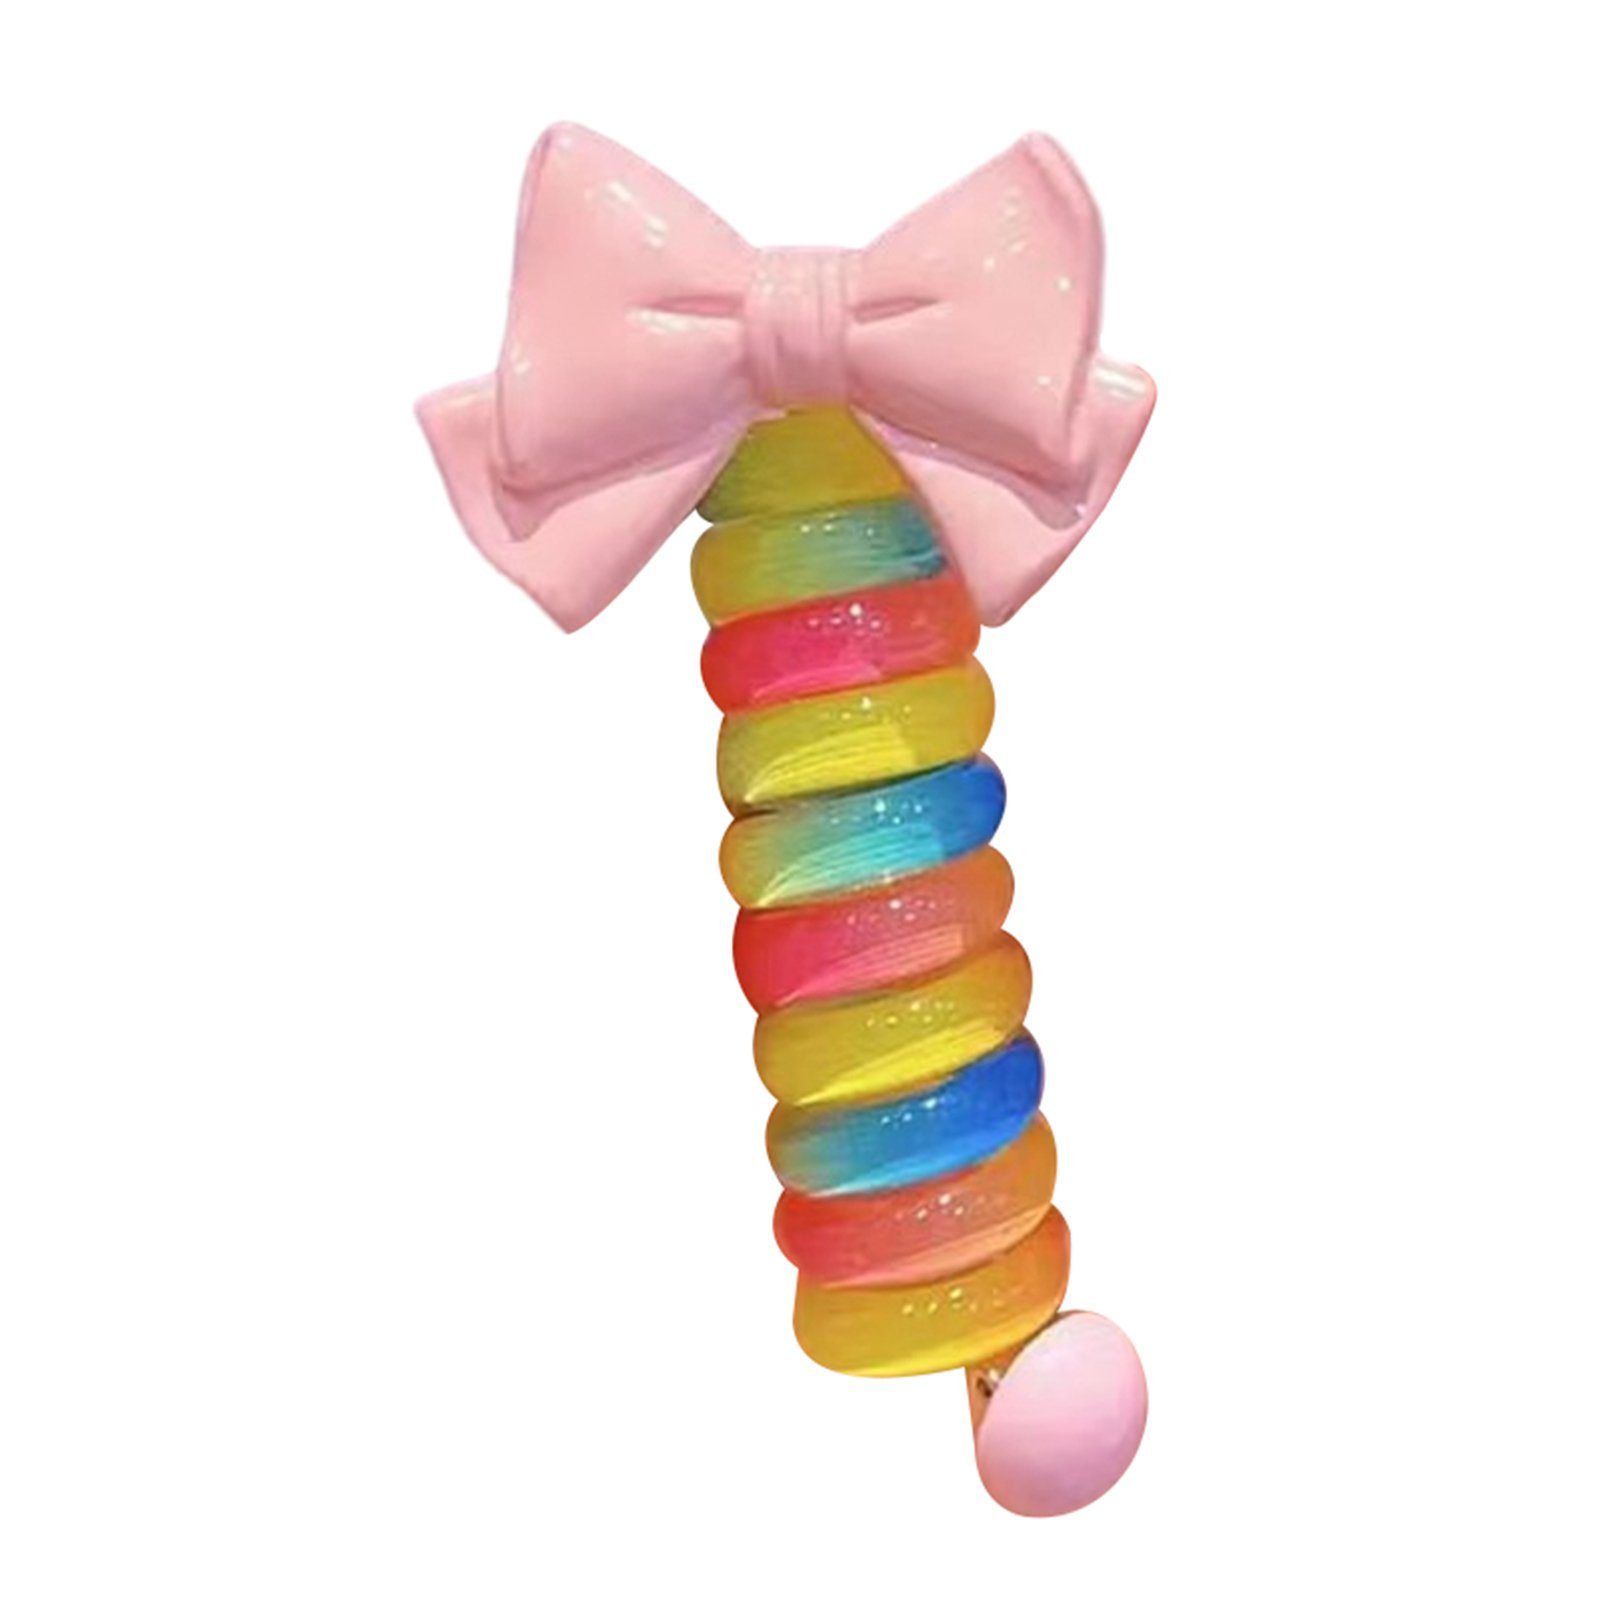 Blusmart Spiral-Haargummi Mädchen Bunte Schleife Telefonkabel Haarbänder Wiederverwendbare DIY, Spiral-Haargummi pink bow